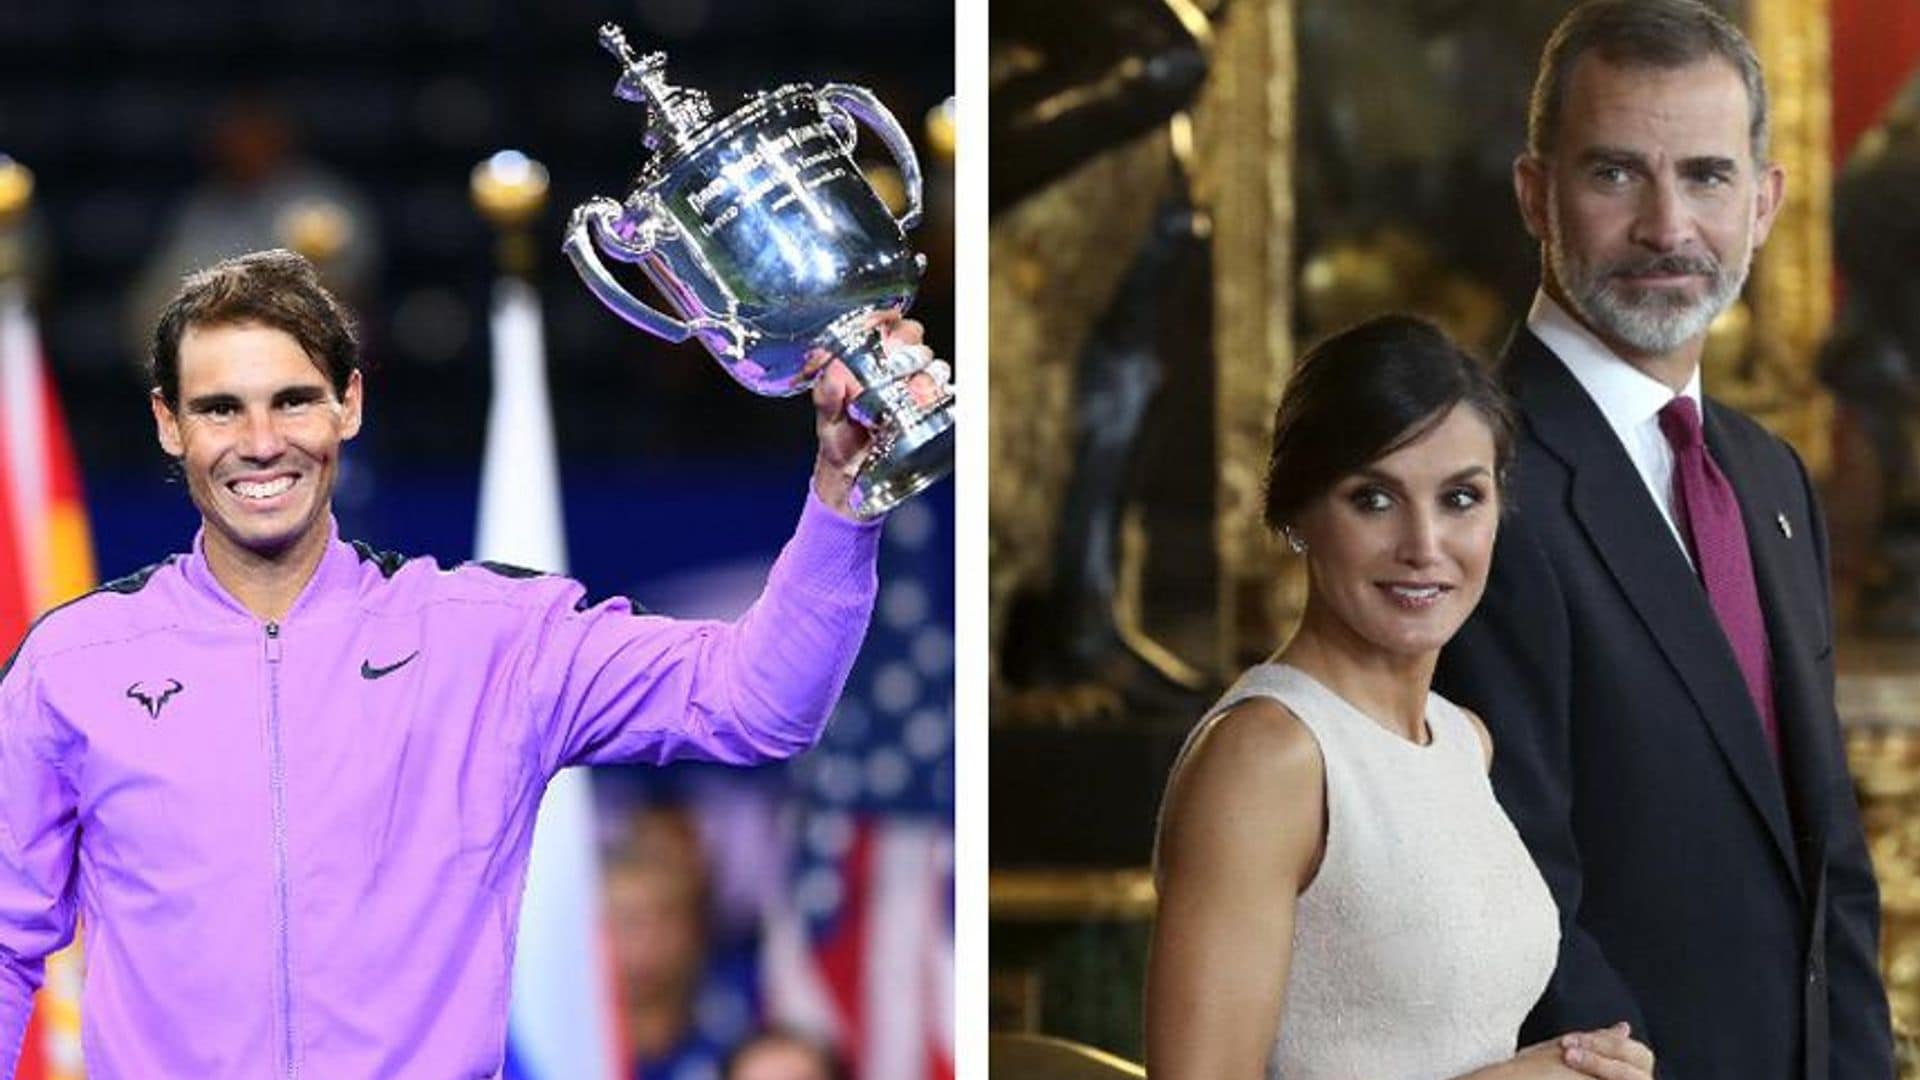 Rafael Nadal receives congrats on US Open win from Queen Letizia, King Felipe